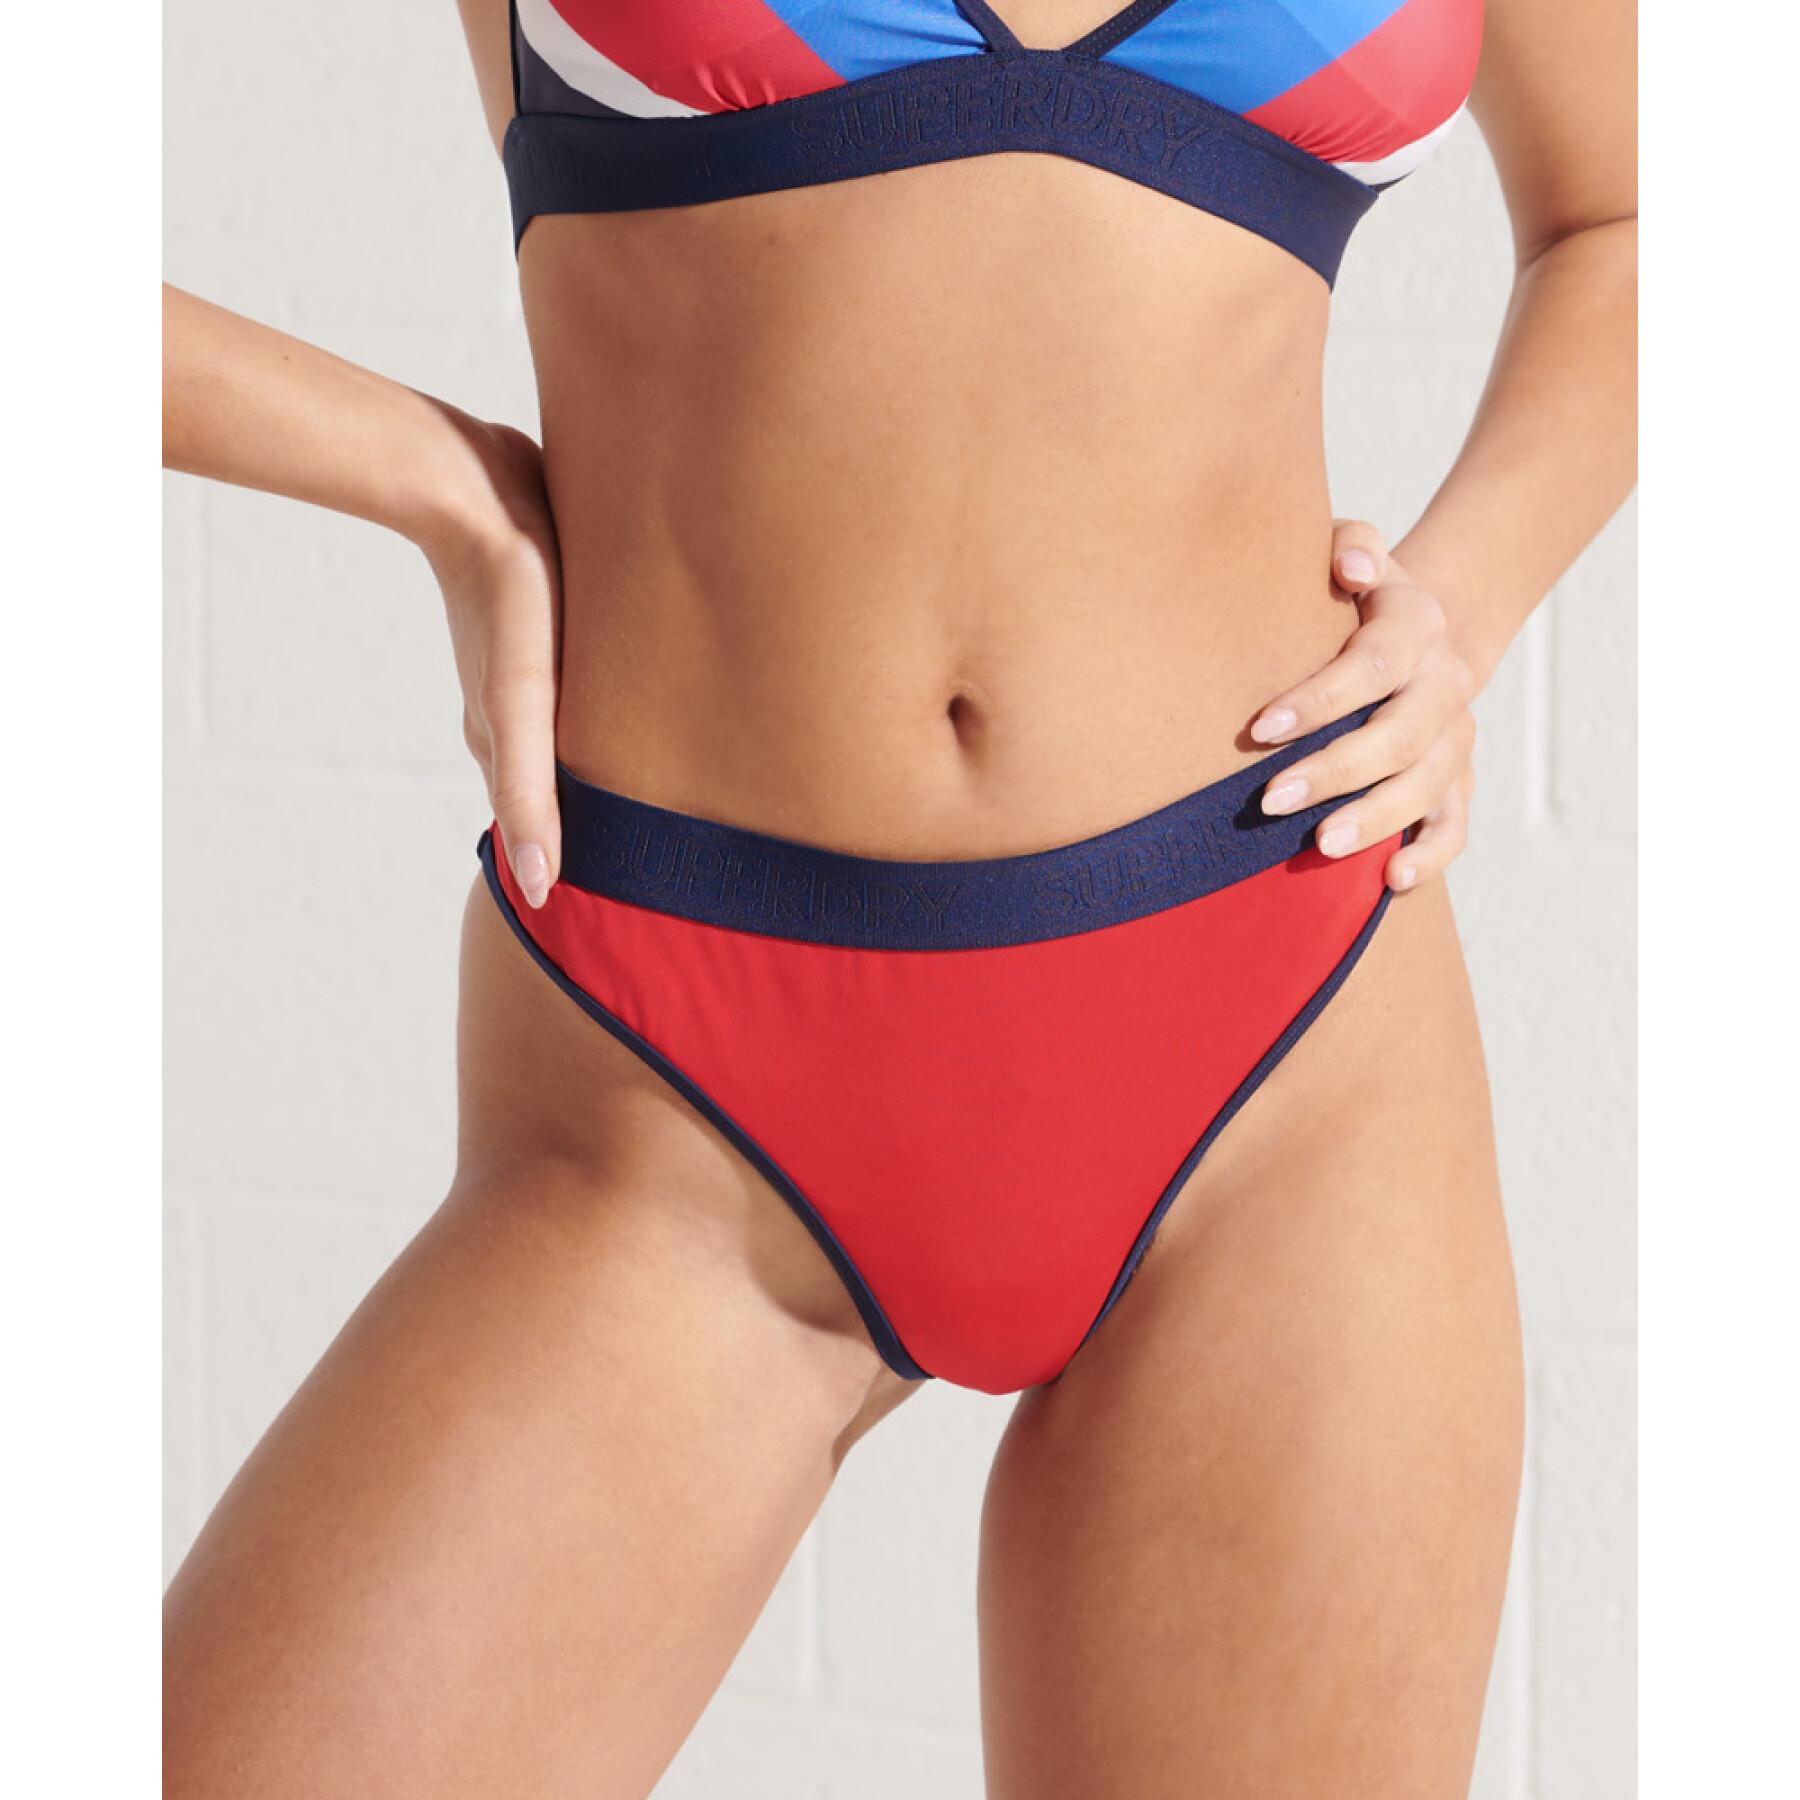 Bikiniunterteile für Frauen Superdry